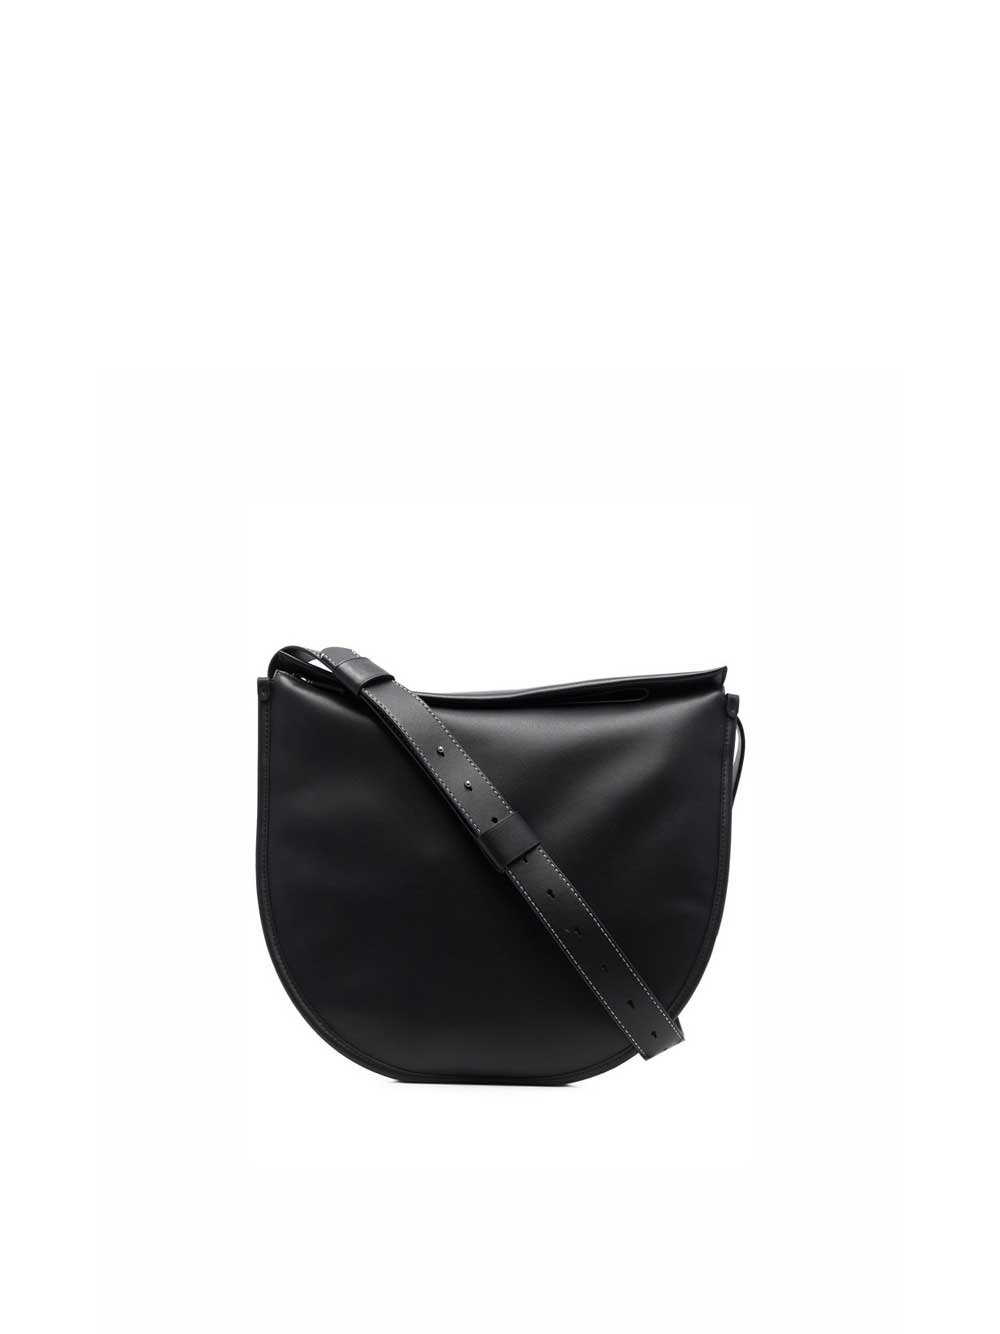 Baxter Leather Bag